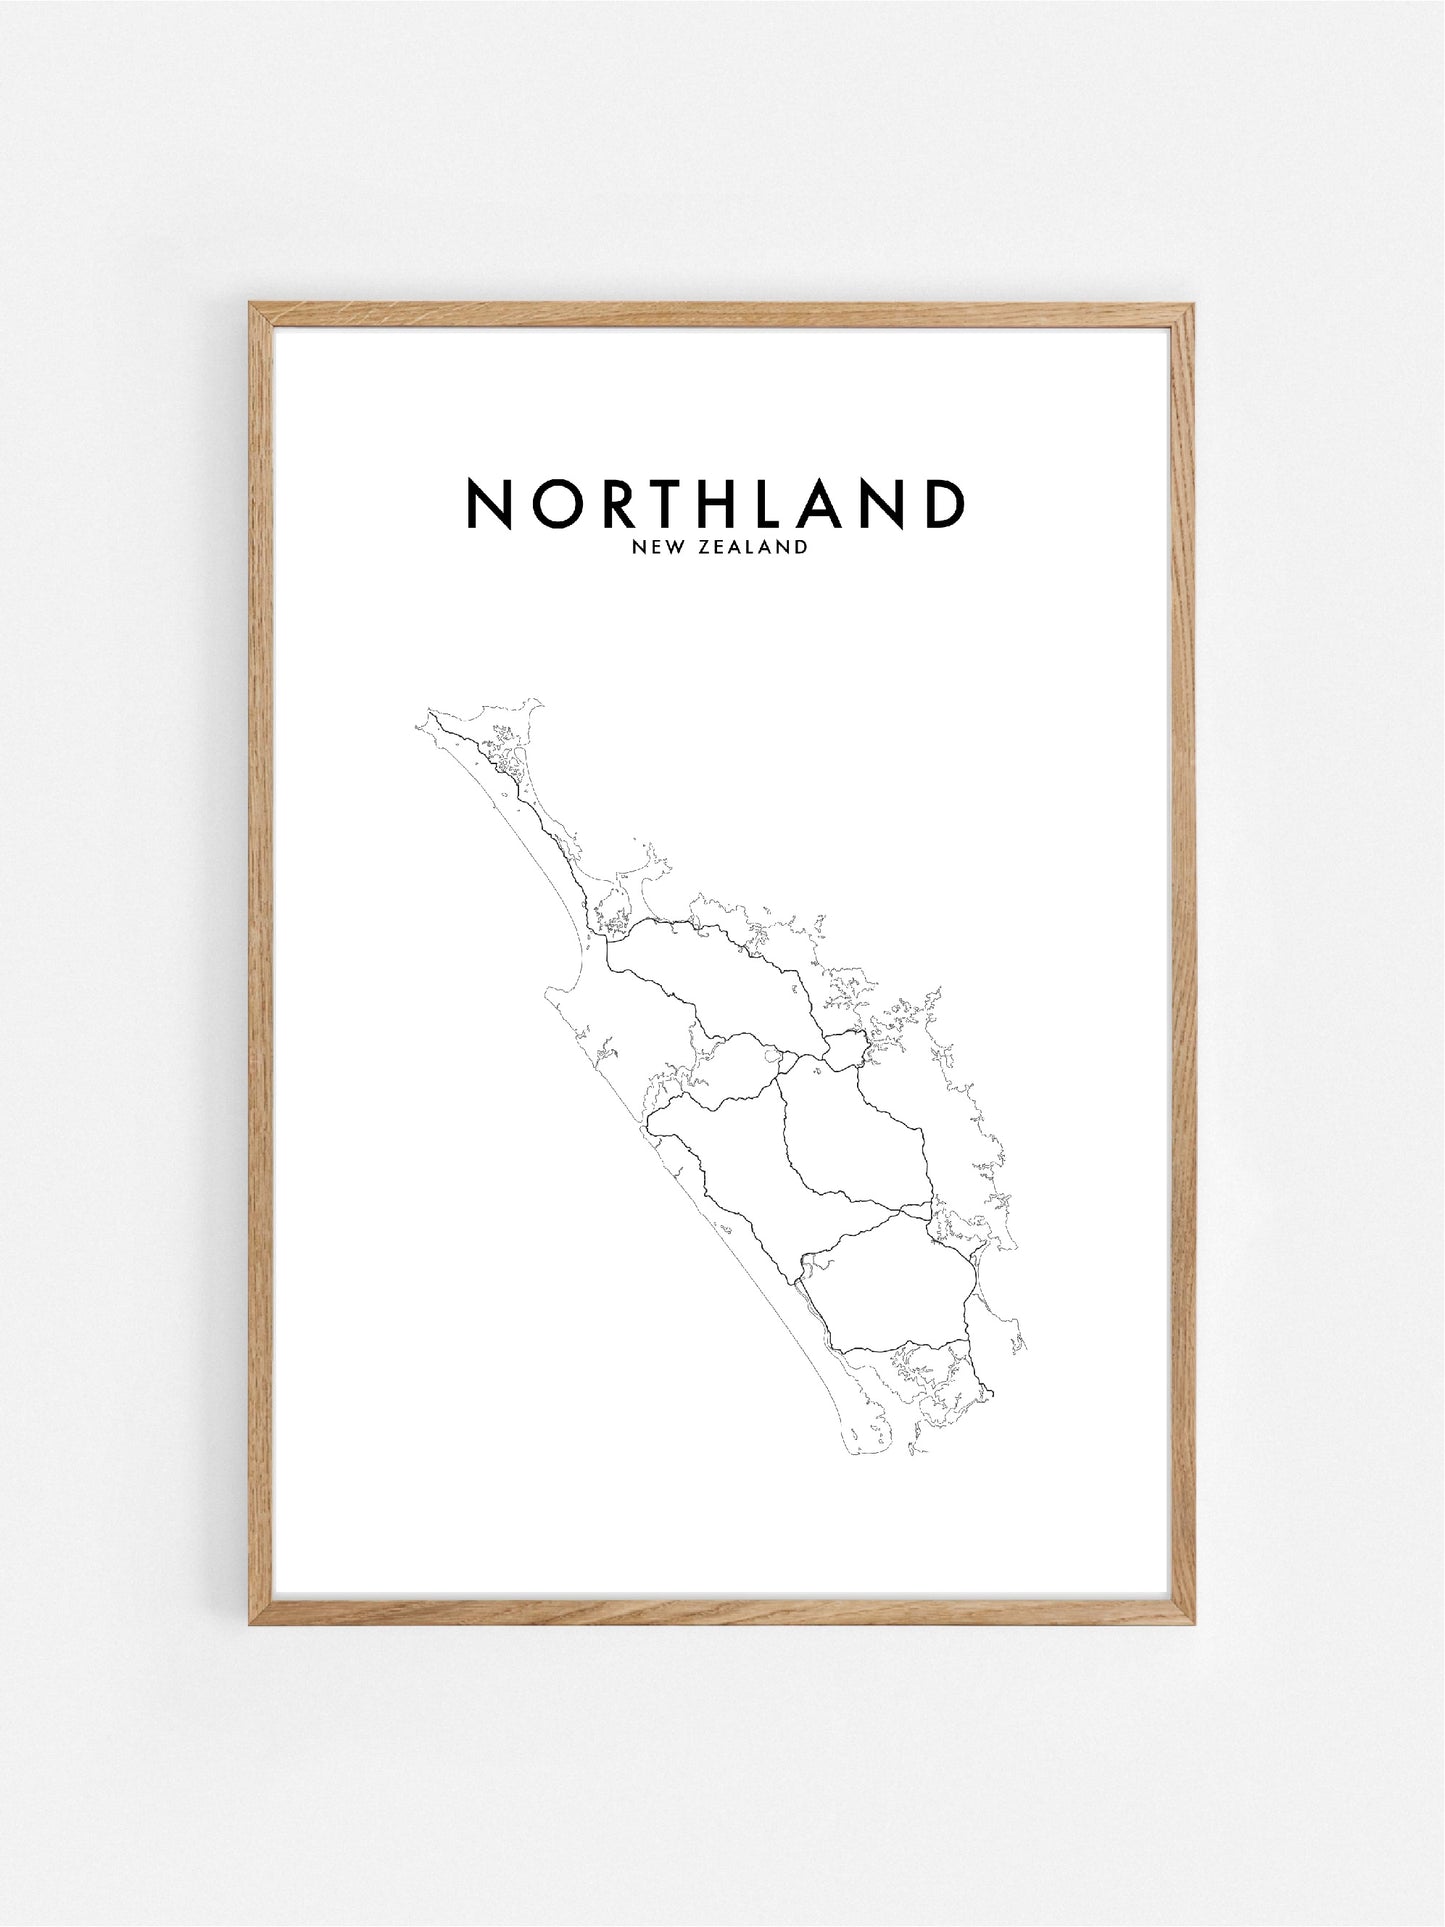 NORTHLAND, NZ HOMETOWN PRINT